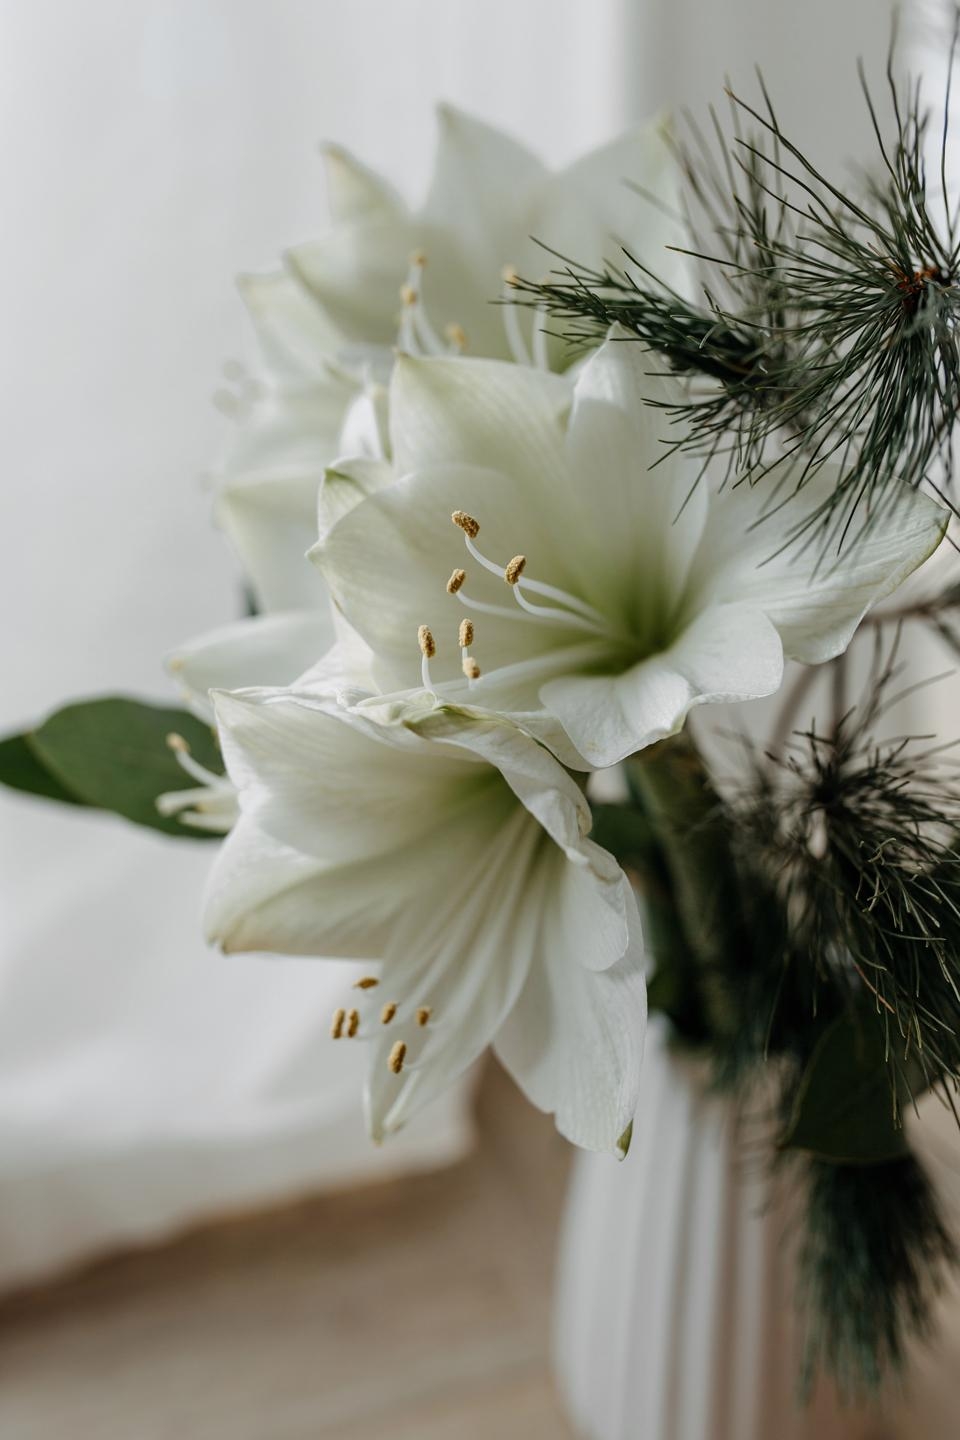 Große Amaryllis-Liebe #amaryllis #weihnachten #landhaus #cottage #couchliebt #vasenmittwoch #blumenliebe #landleben